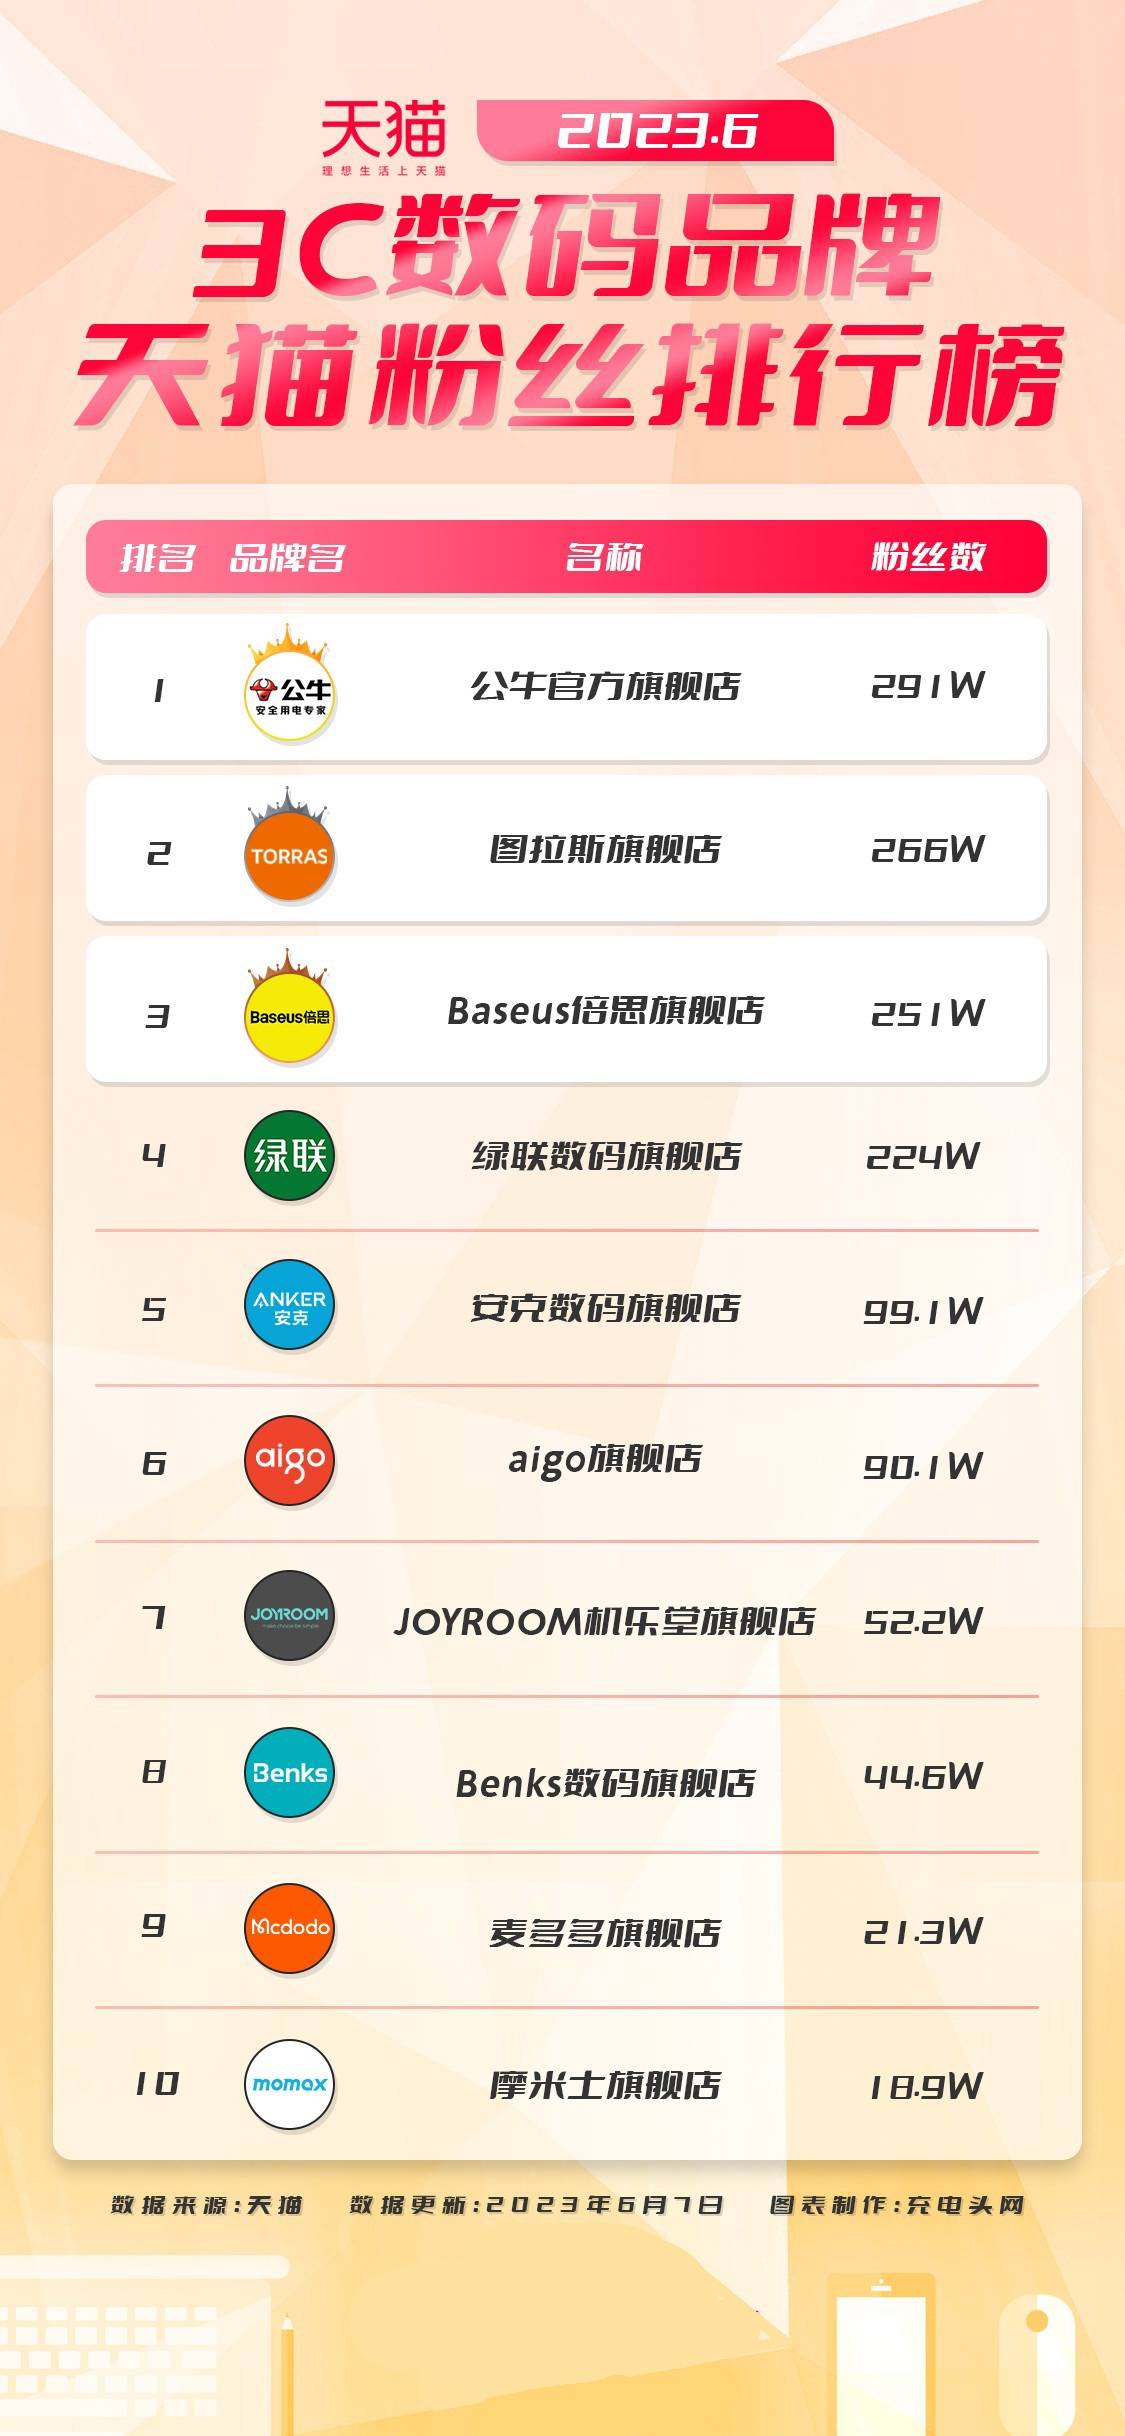 202JBO竞博3年6月3C数码品牌天猫粉丝排行榜(图1)